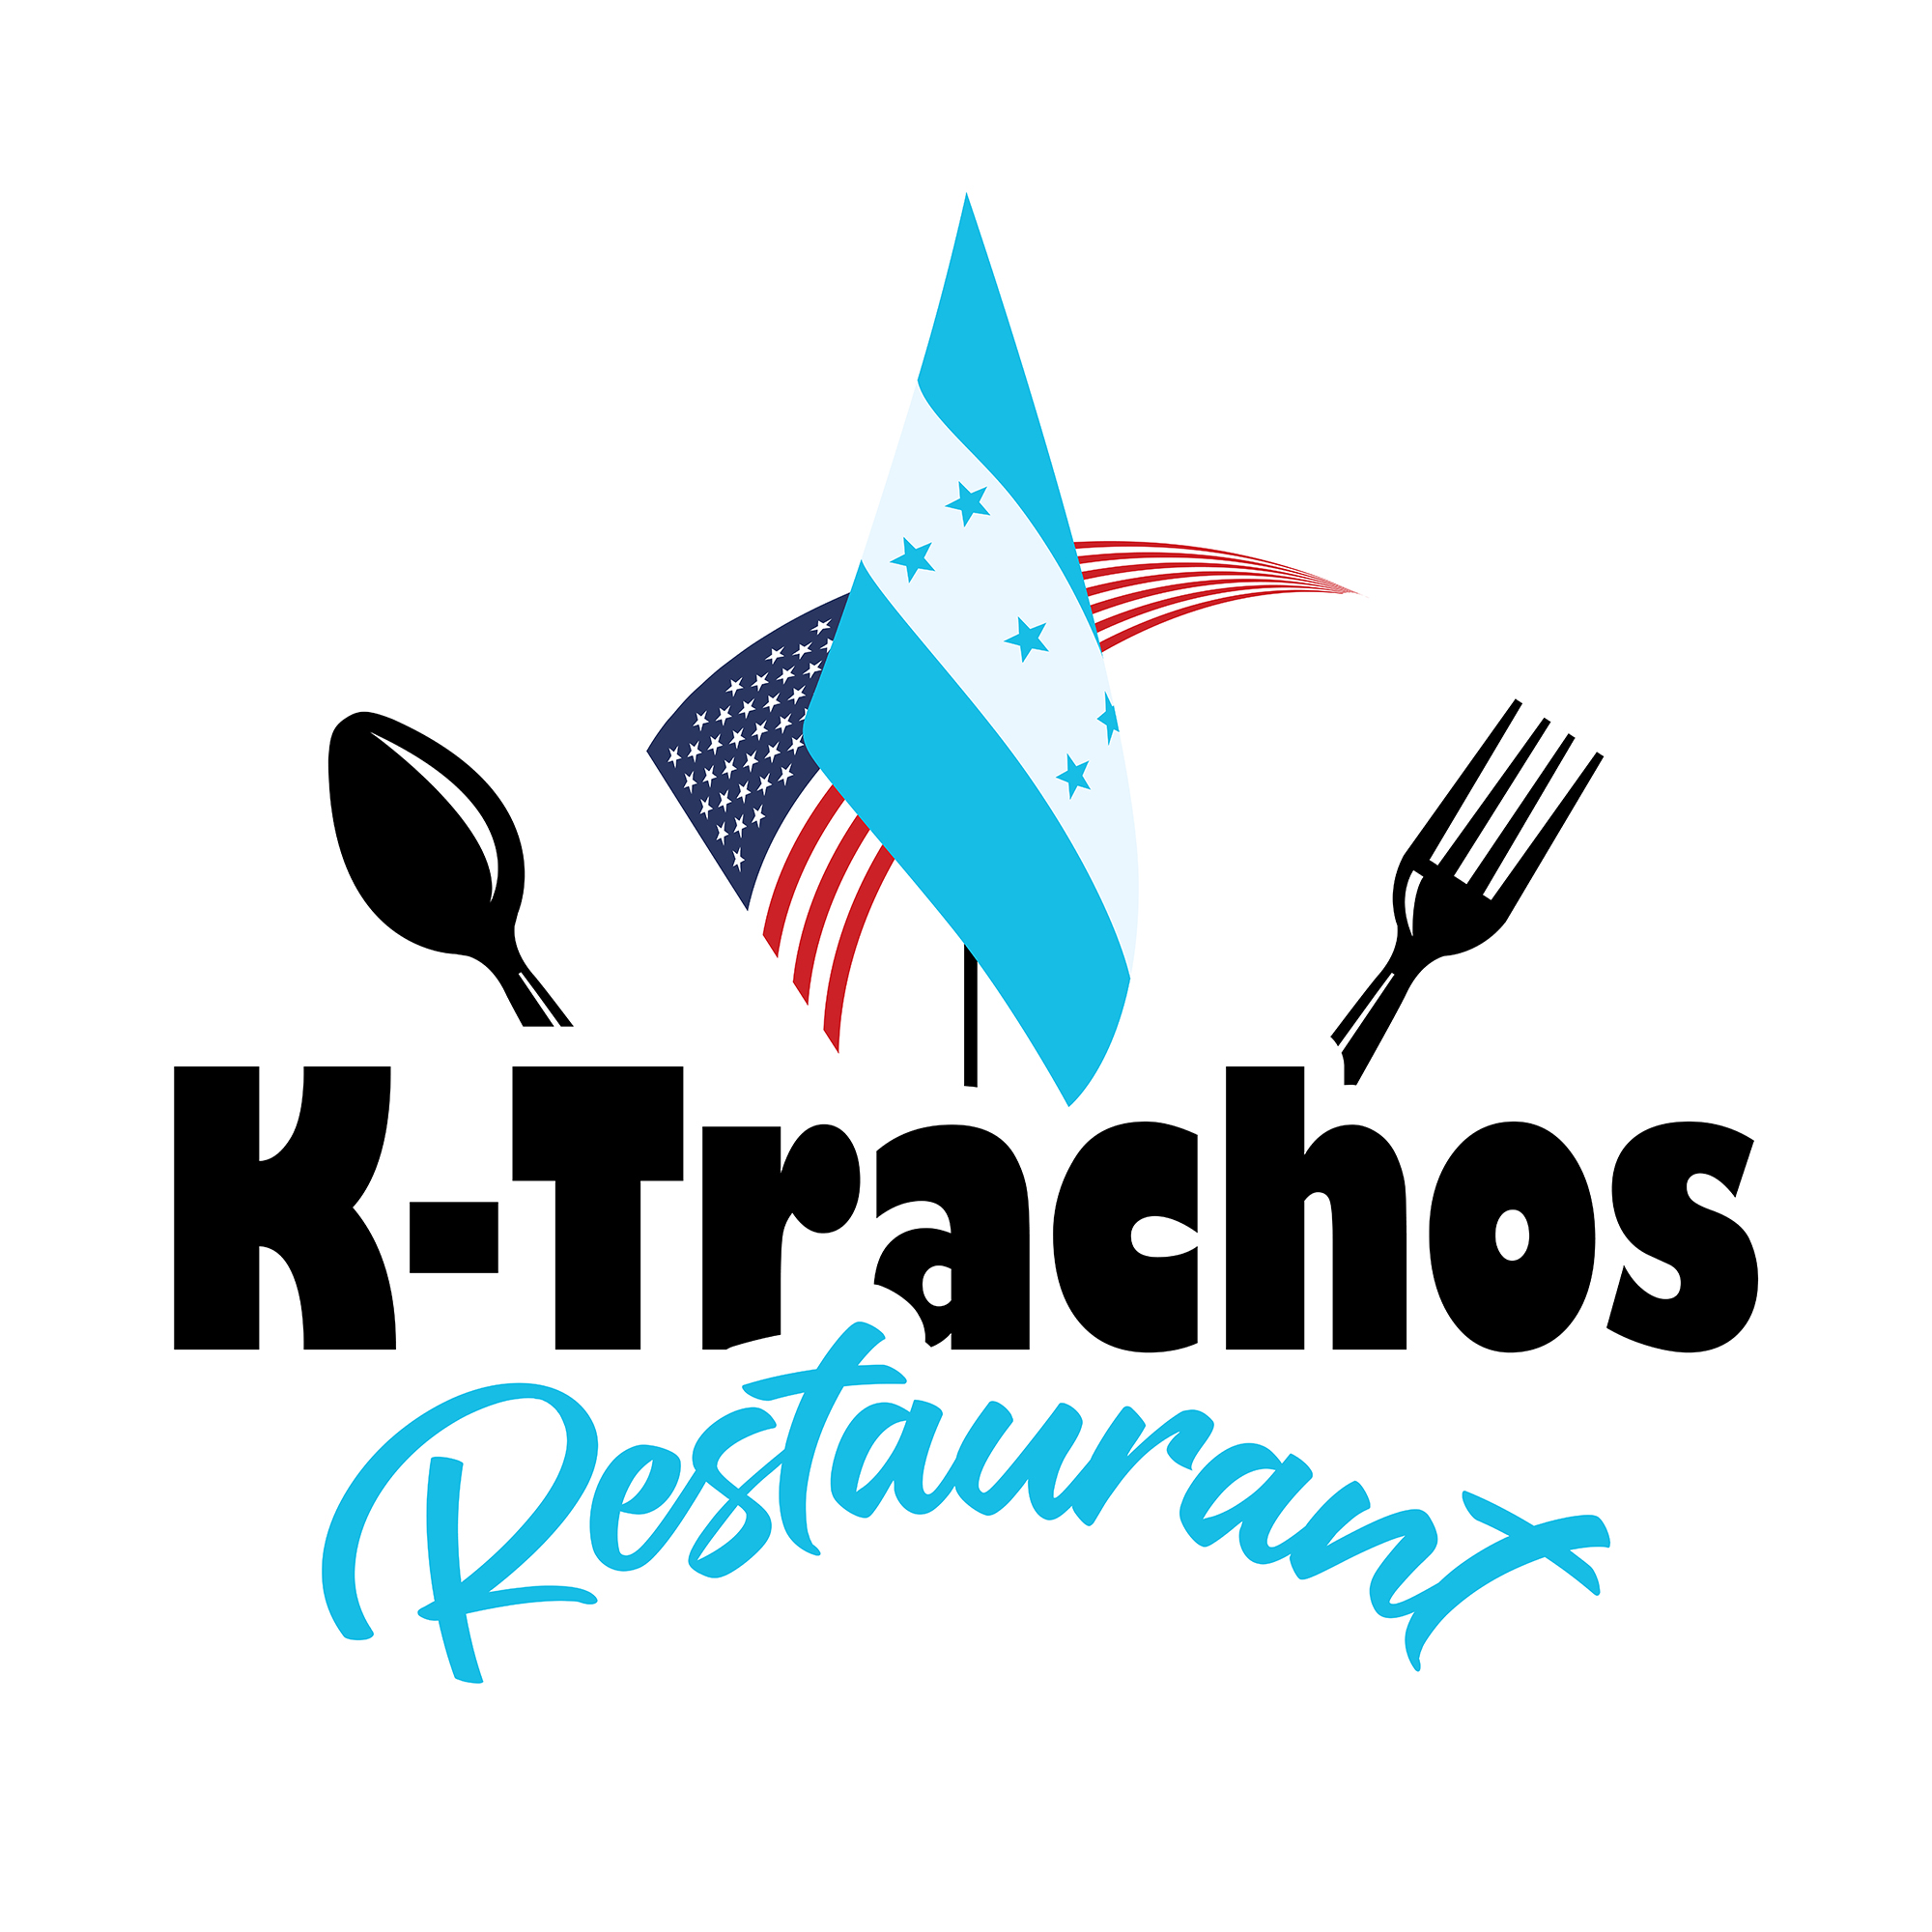 Ktrachos Restaurant